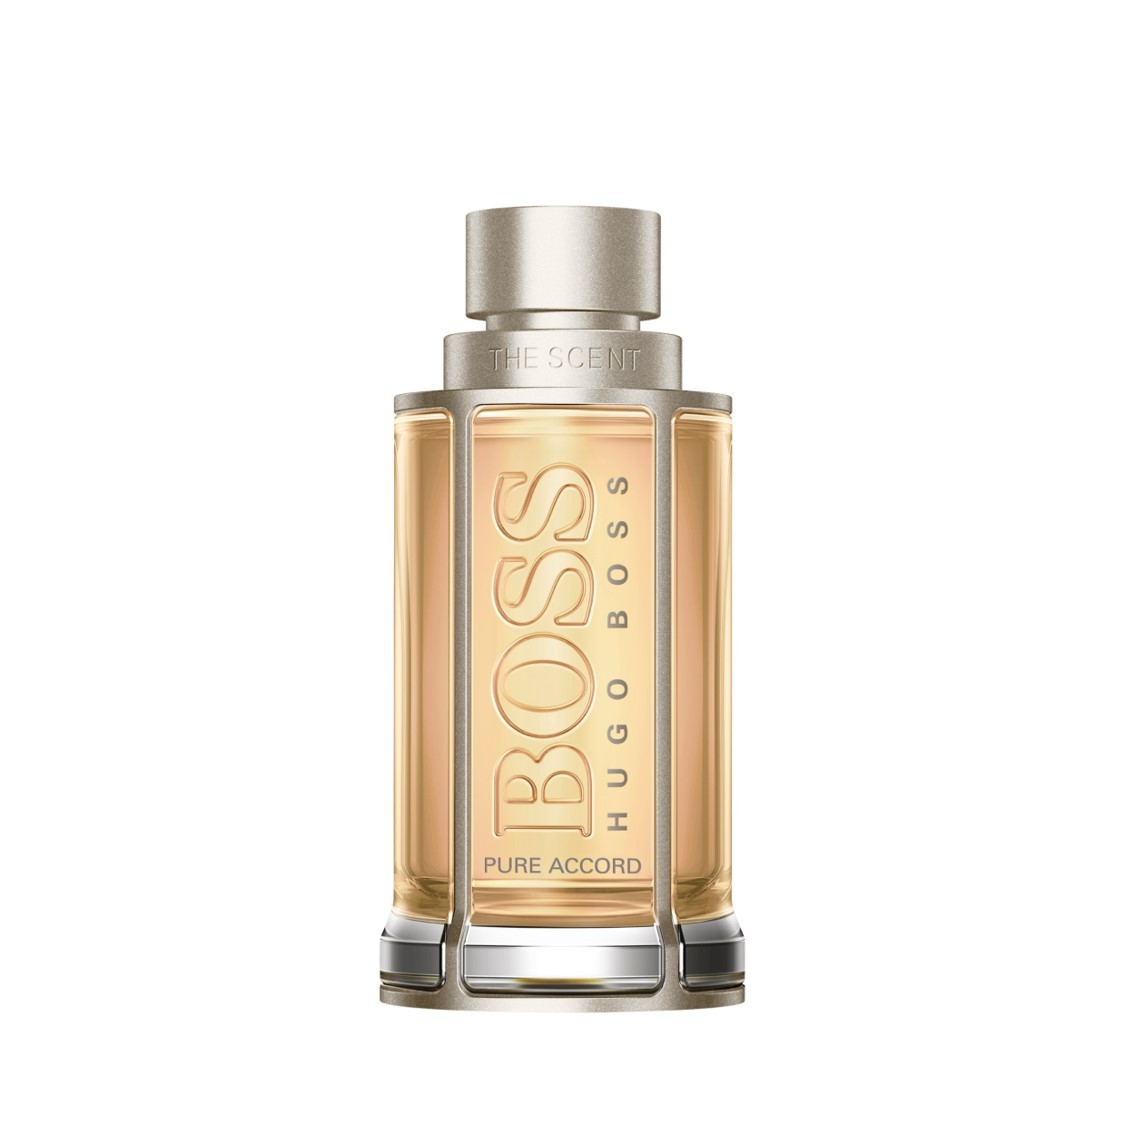 Hugo Boss - The Scent Pure Accord Eau de Toilette Spray -  50 ml